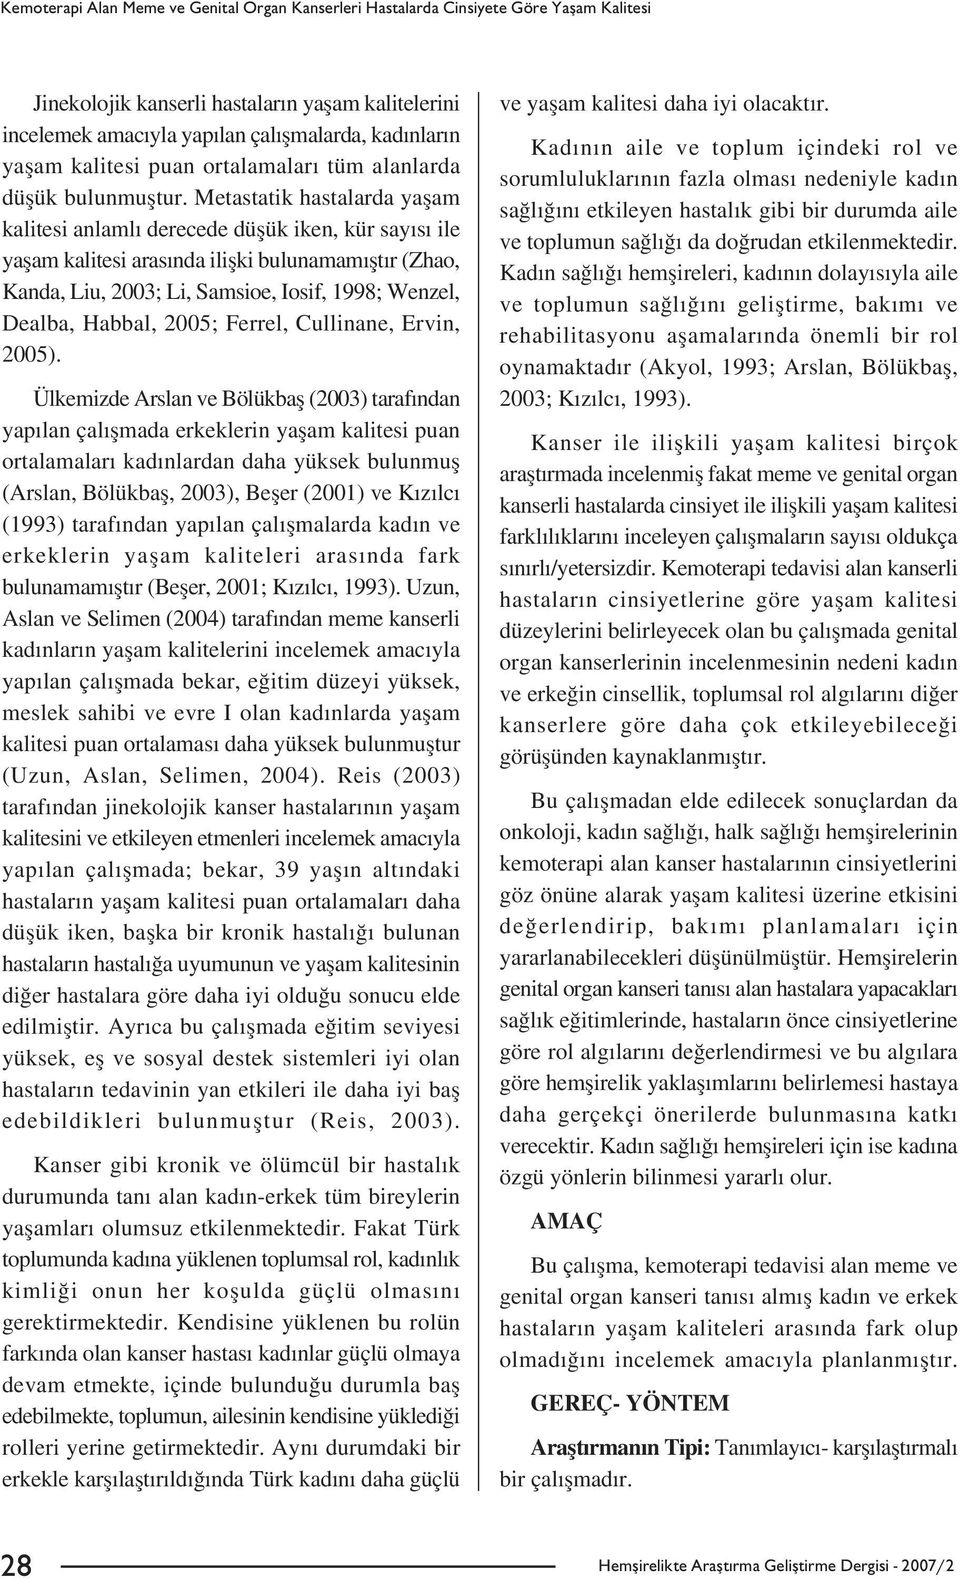 Metastatik hastalarda yaflam kalitesi anlaml derecede düflük iken, kür say s ile yaflam kalitesi aras nda iliflki bulunamam flt r (Zhao, Kanda, Liu, 2003; Li, Samsioe, Iosif, 1998; Wenzel, Dealba,